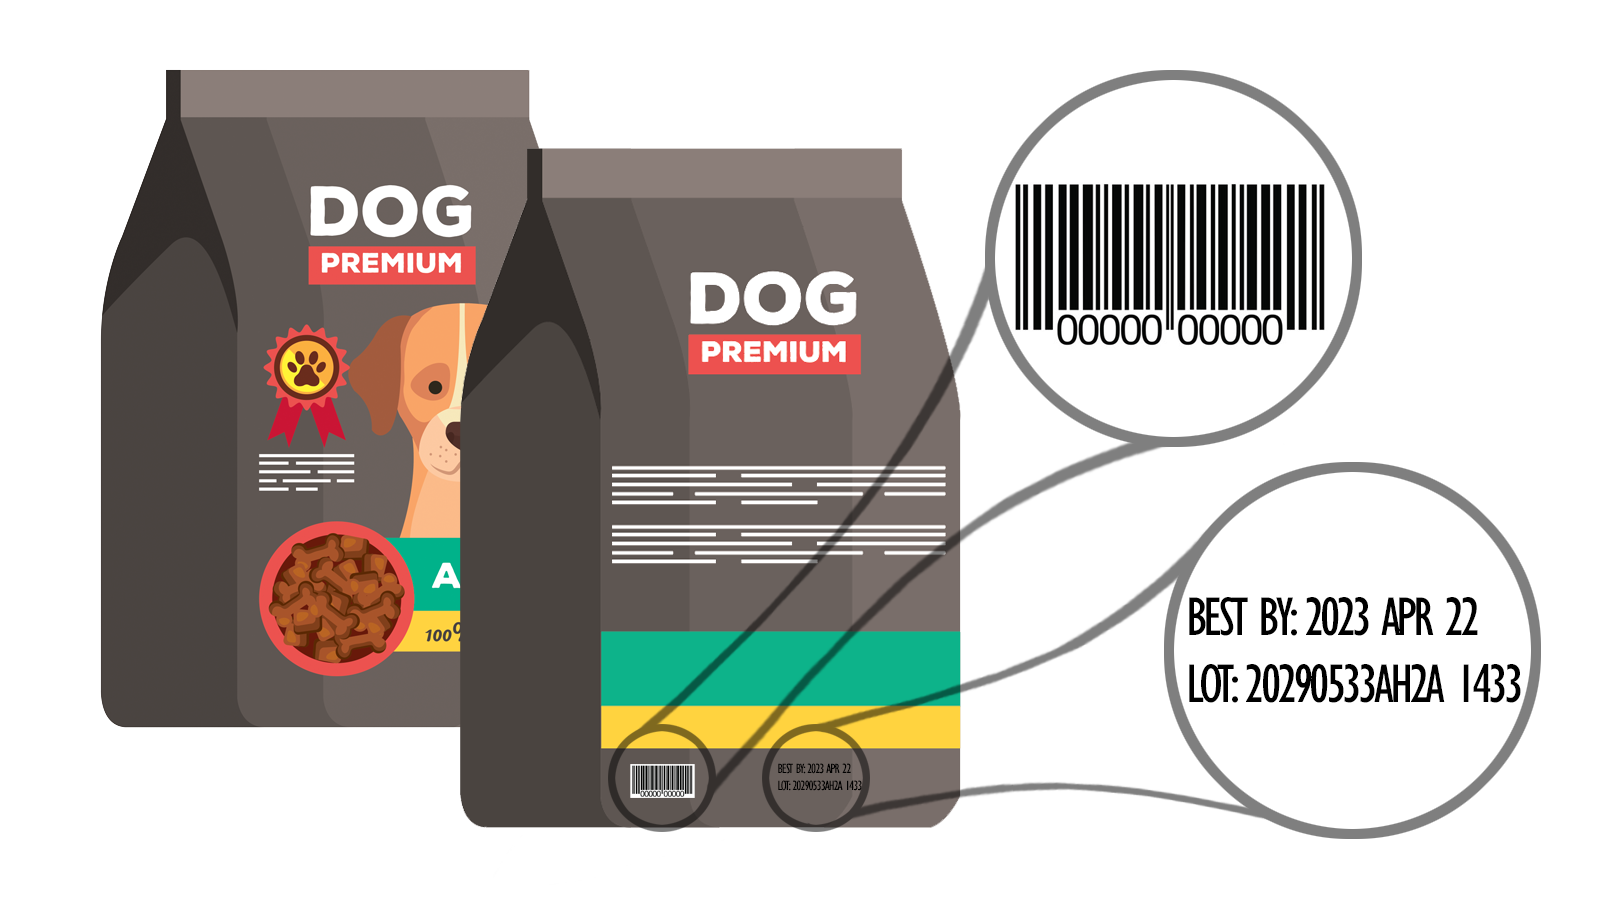 Información sobre el UPC y la fecha de consumo recomendado en una bolsa de alimento para perros